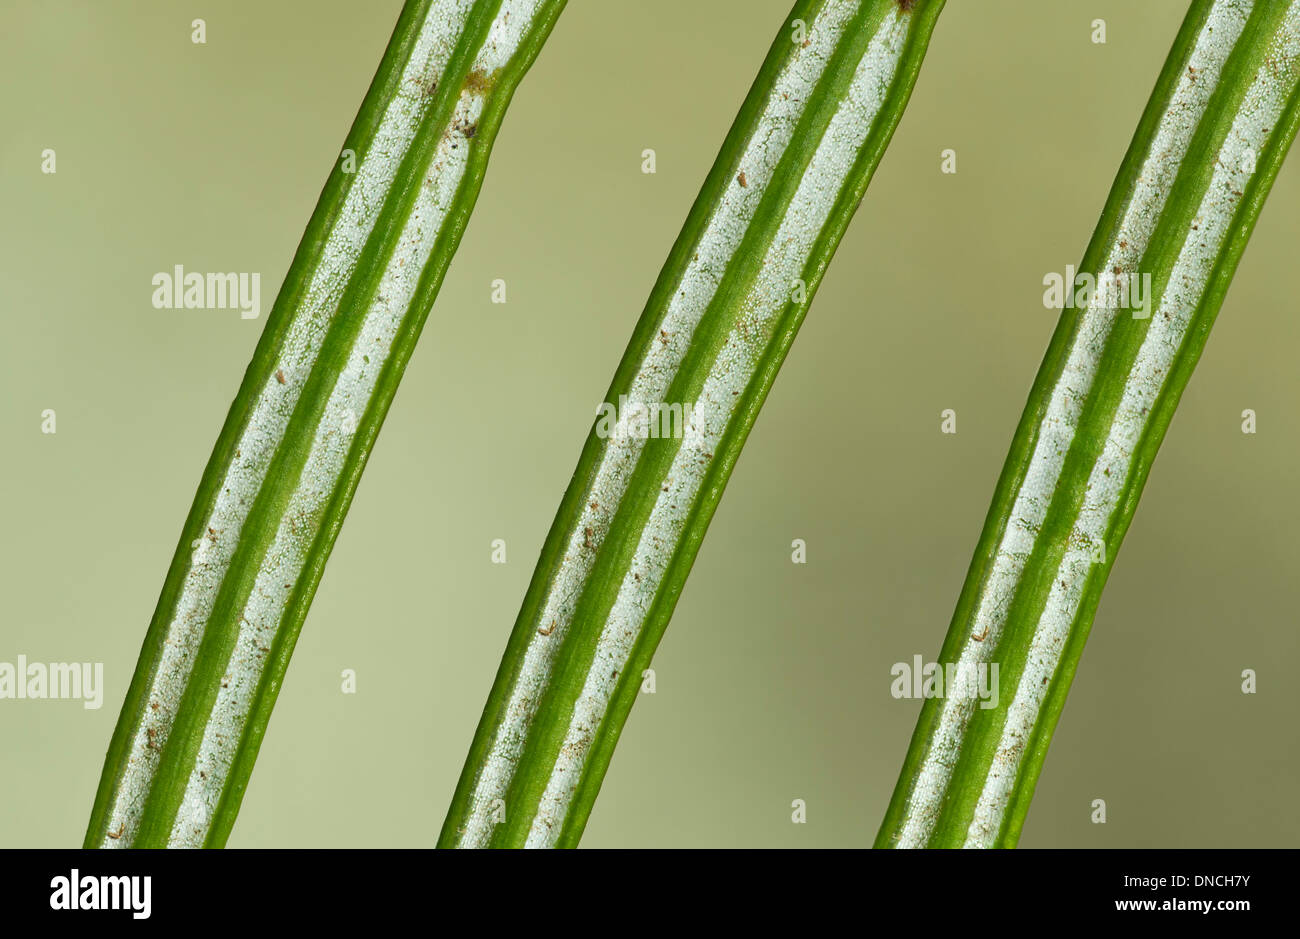 Dessous de l'aiguille, comme les feuilles d'un sapin Nordman (nordmannica Albies) avec deux lignes de stomates blanc Banque D'Images